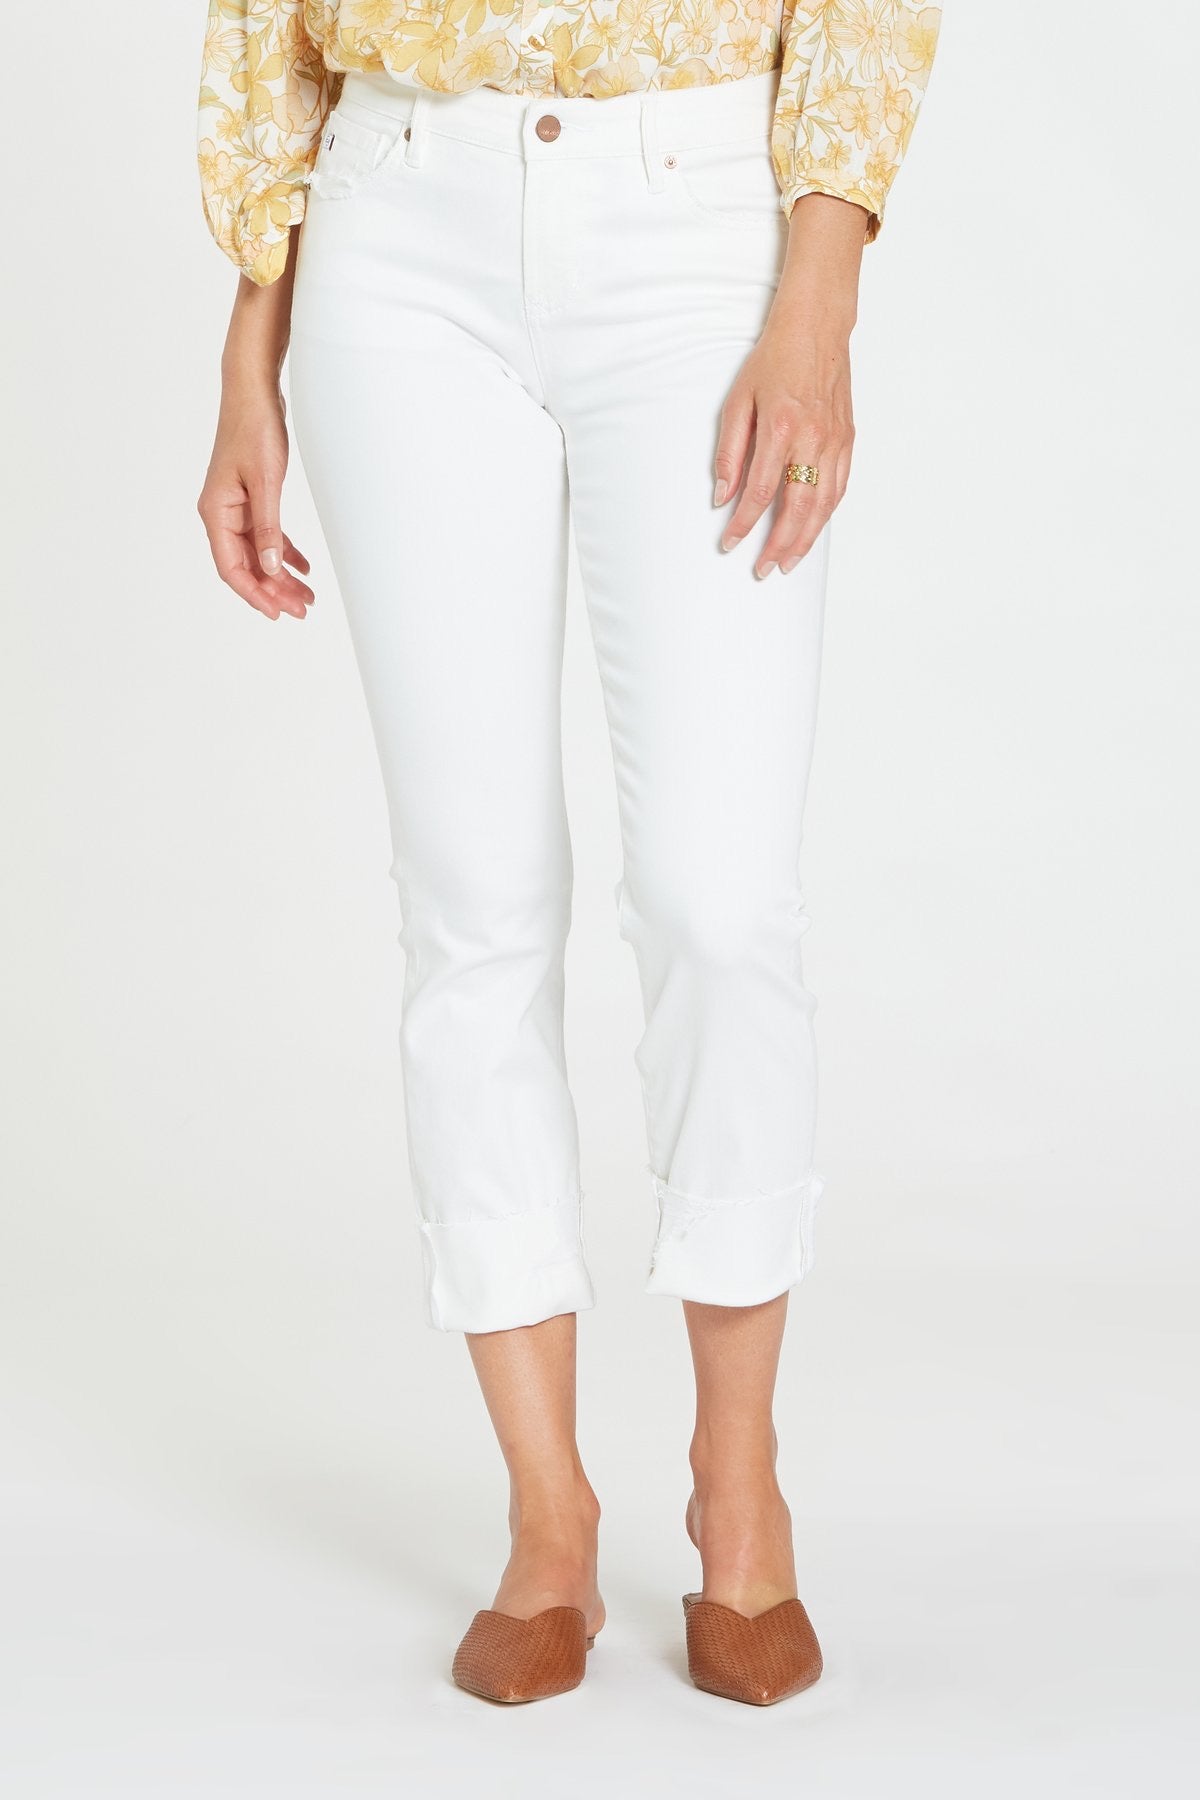 Blaire Cuffed Slim Straight Jean - Optic White - Brazos Avenue Market 